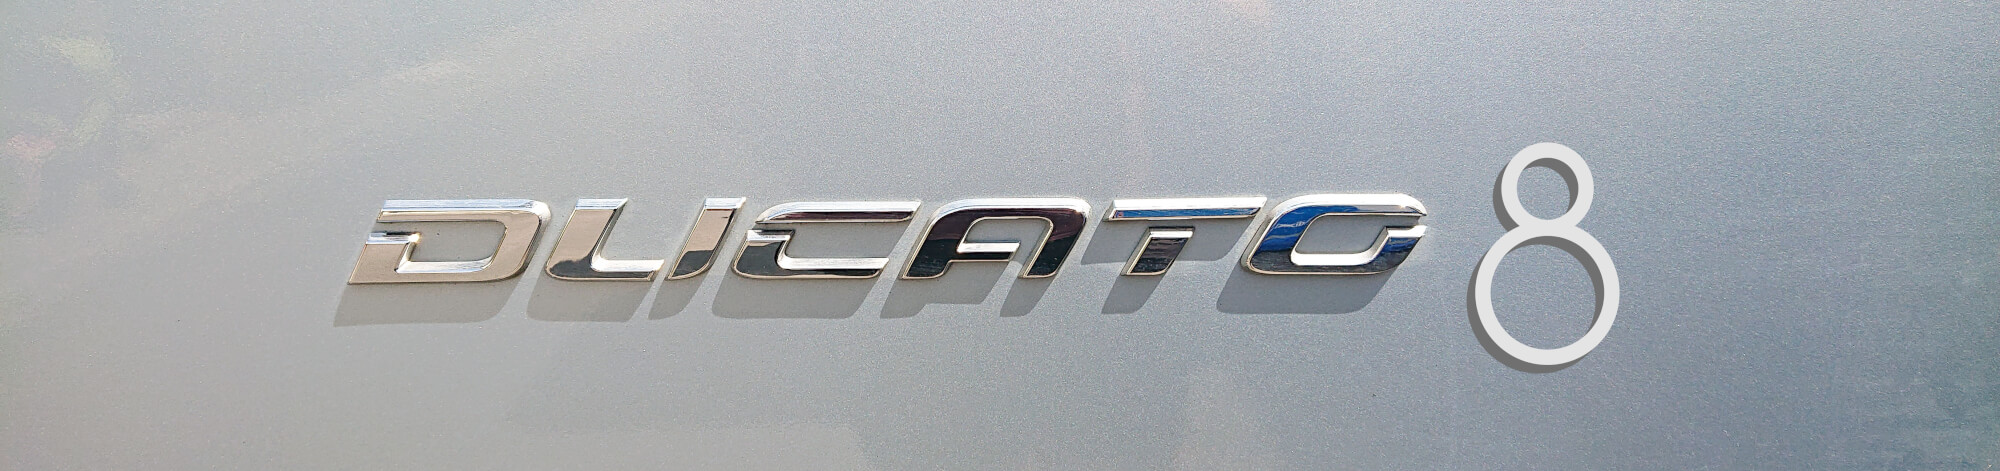 Fiat Ducato 8 